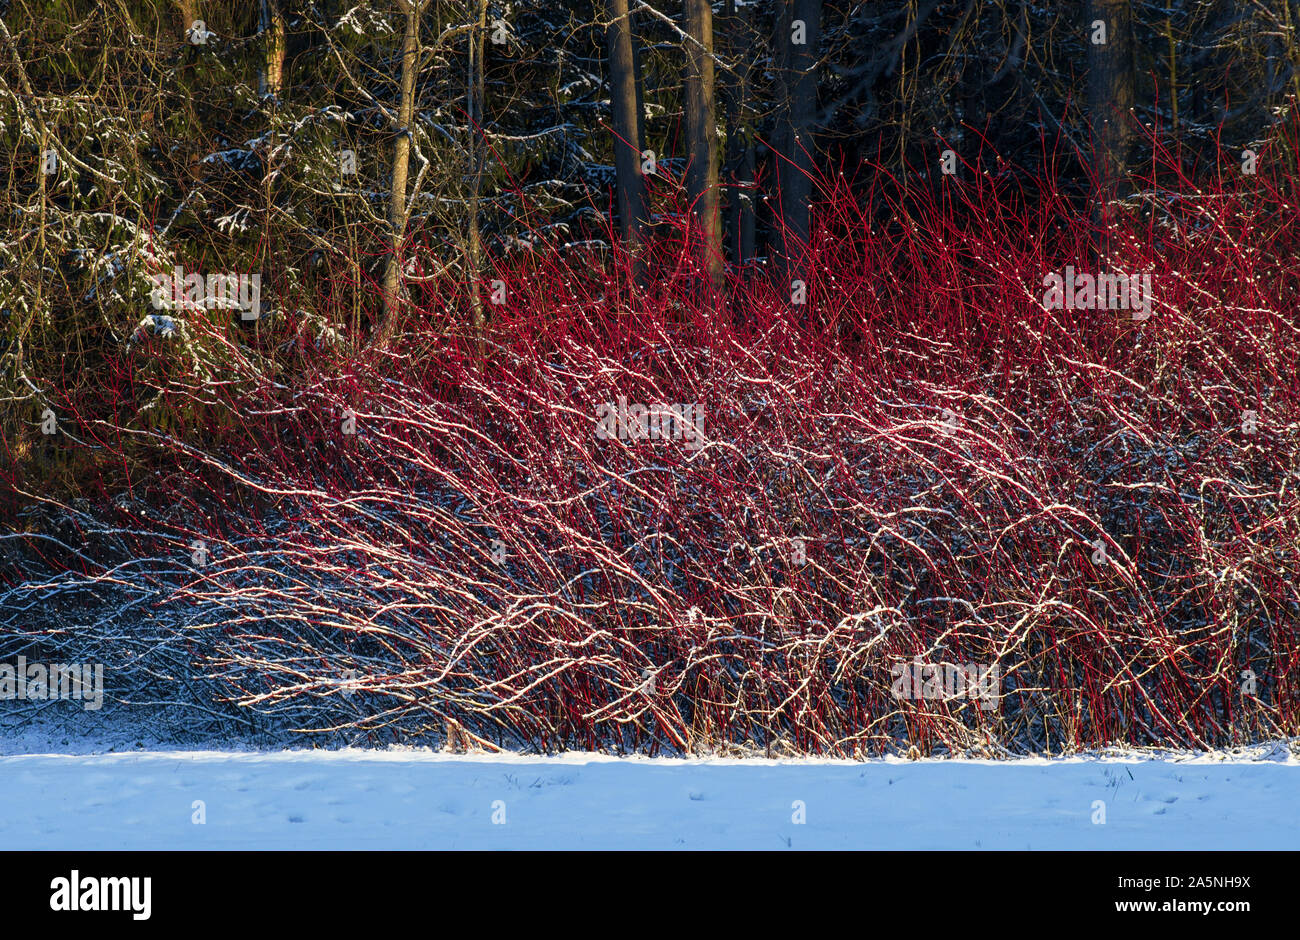 Paisaje invernal con red willow bush cubierto con nieve y es iluminado por el sol Foto de stock